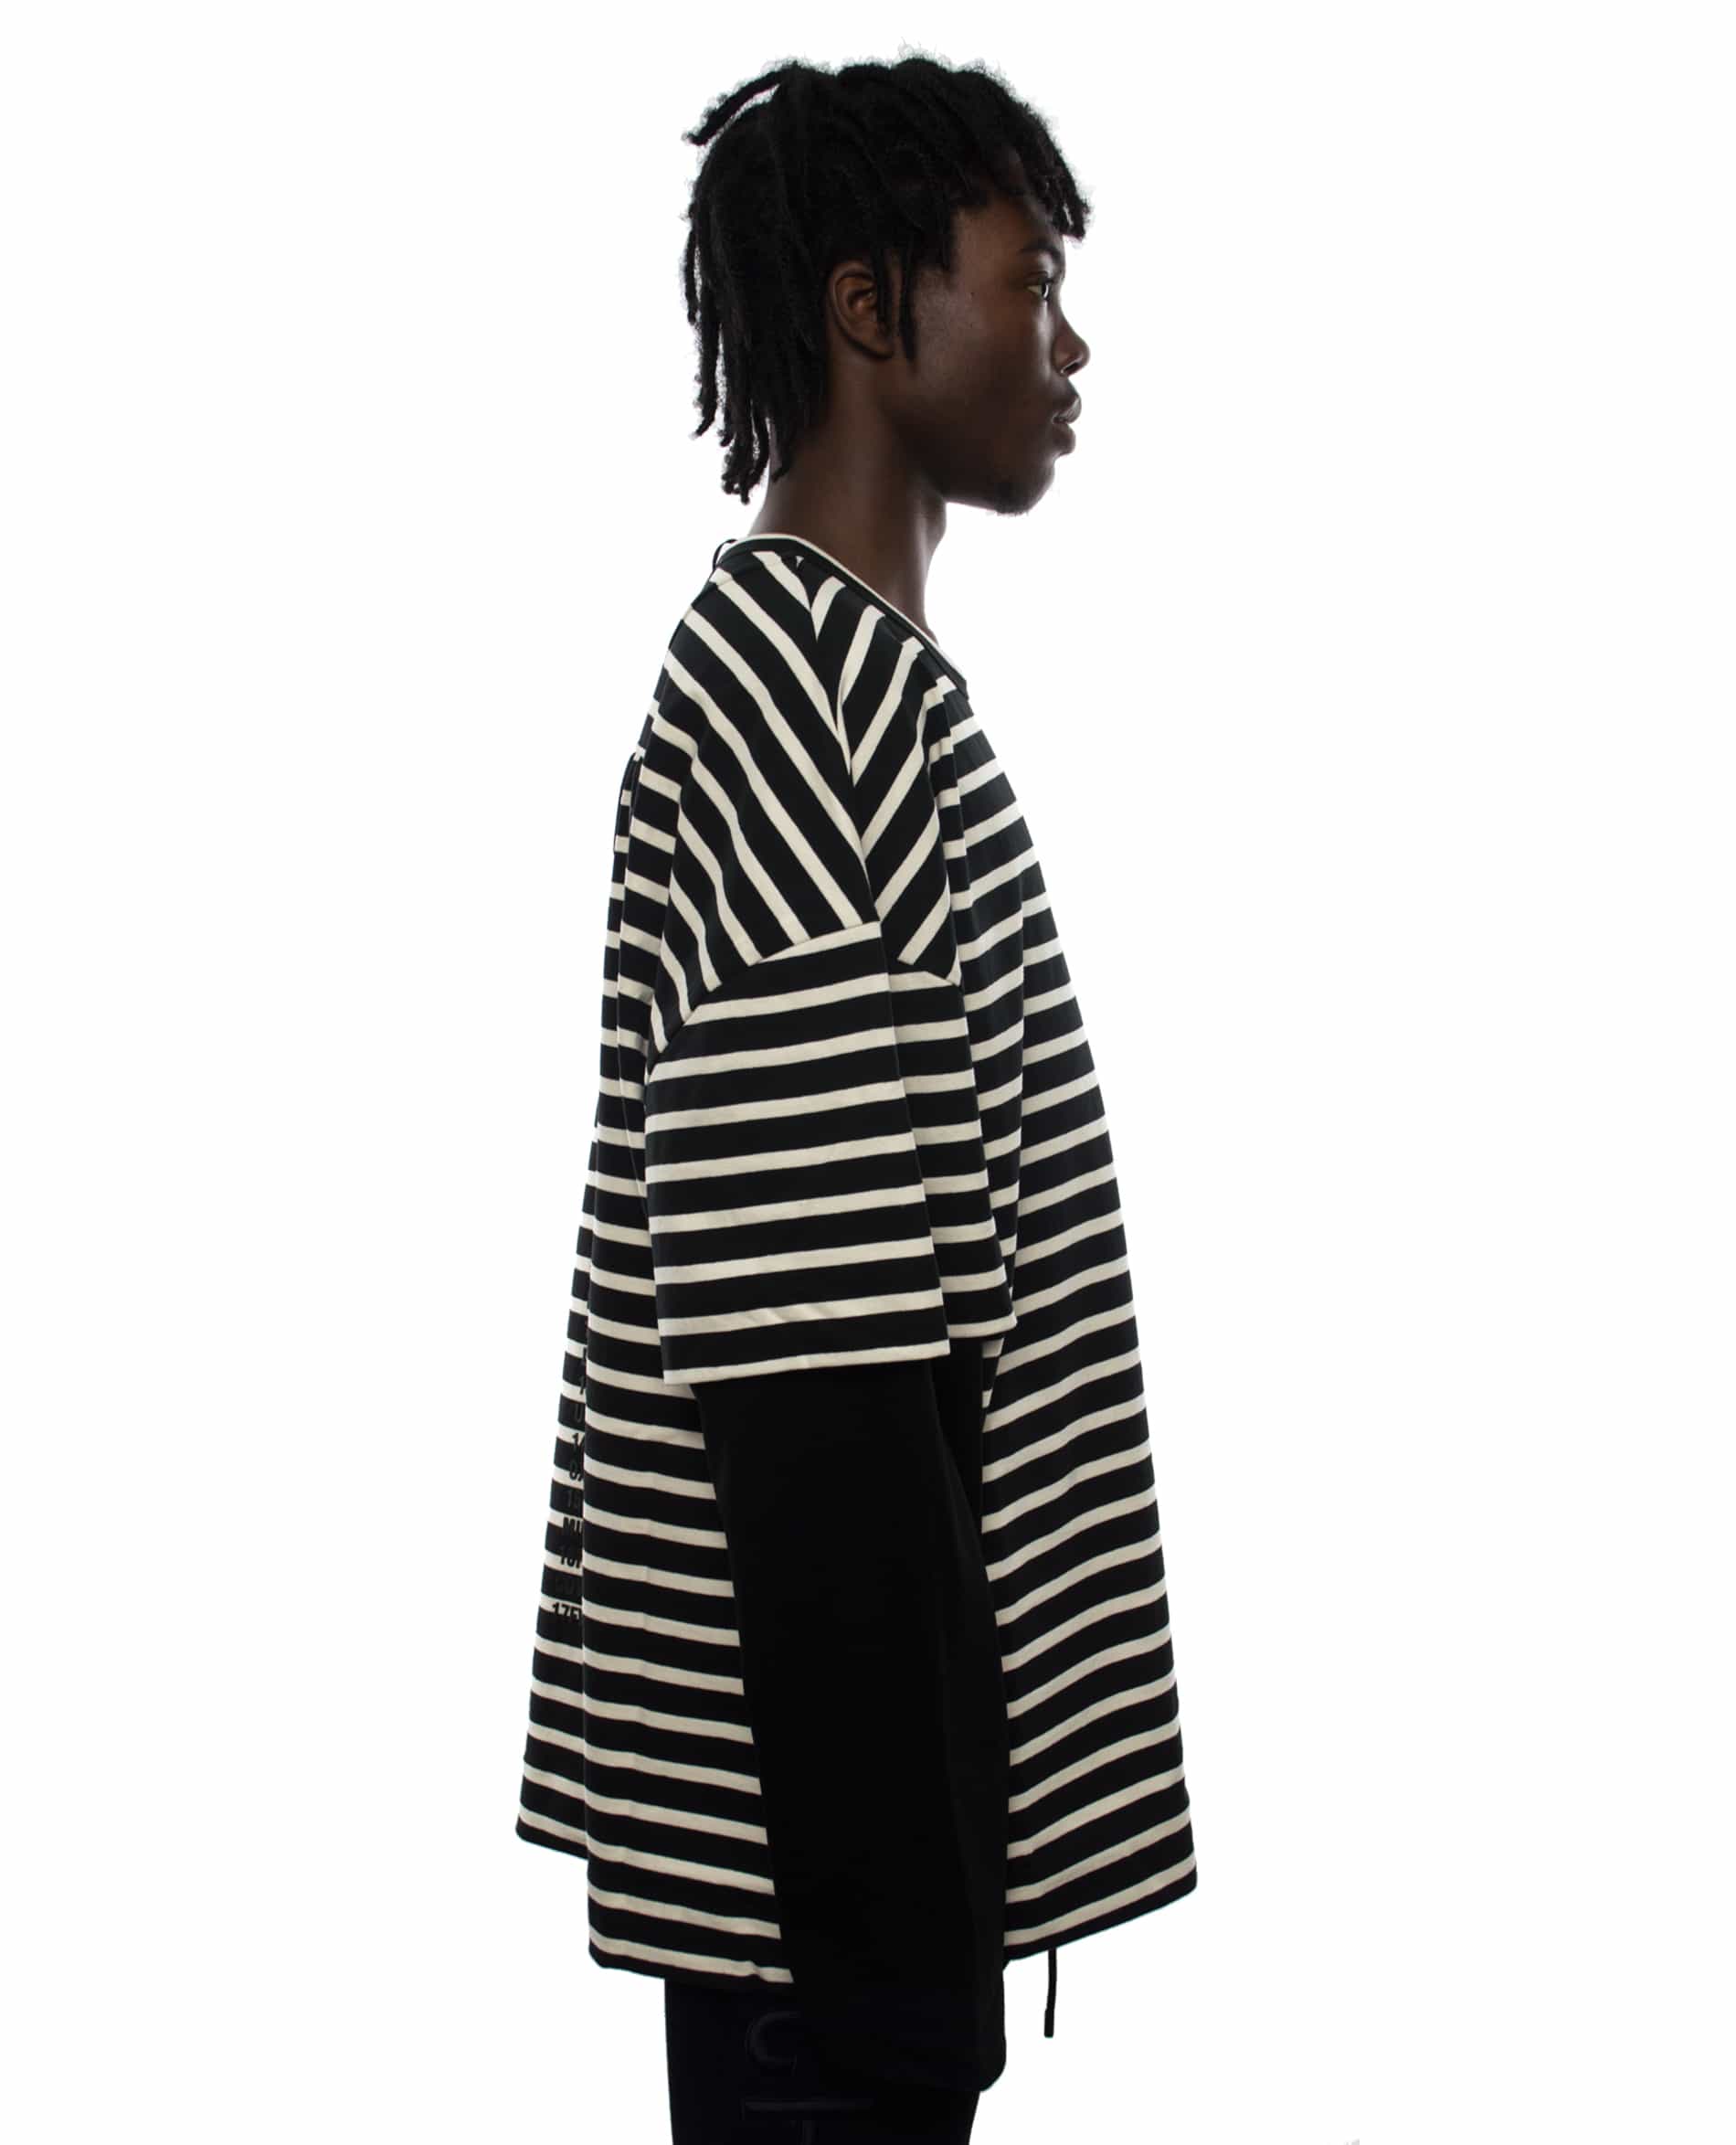 JUUN.J Archive striped T-Shirt – Subt!e